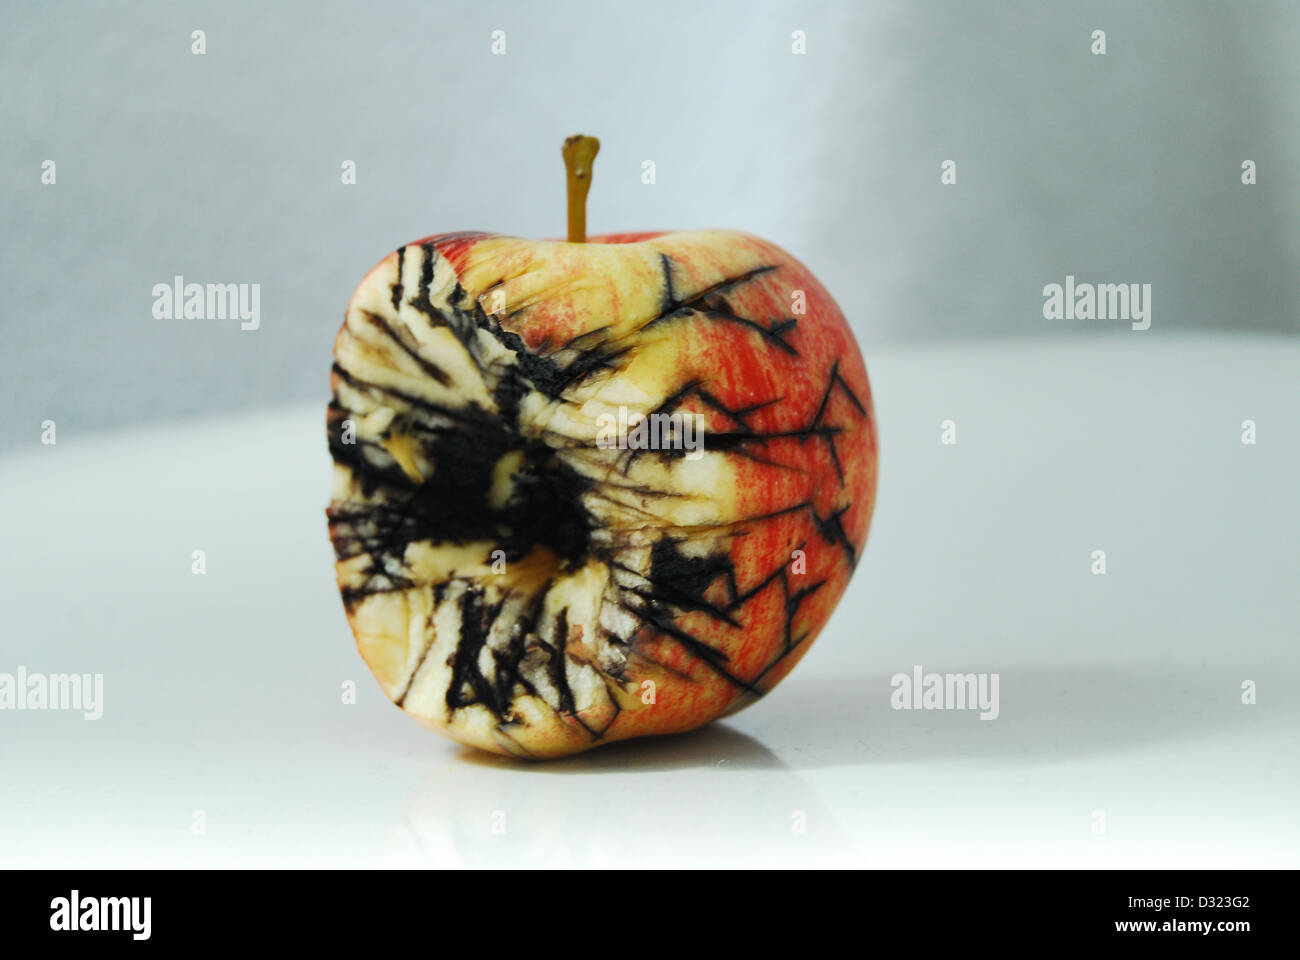 Ein roter und gelber Apfel auf einem weißen Hintergrund, schwarze Risse und Schimmel zeigen Verfall und Fäulnis Obst in gebissen Stockfoto